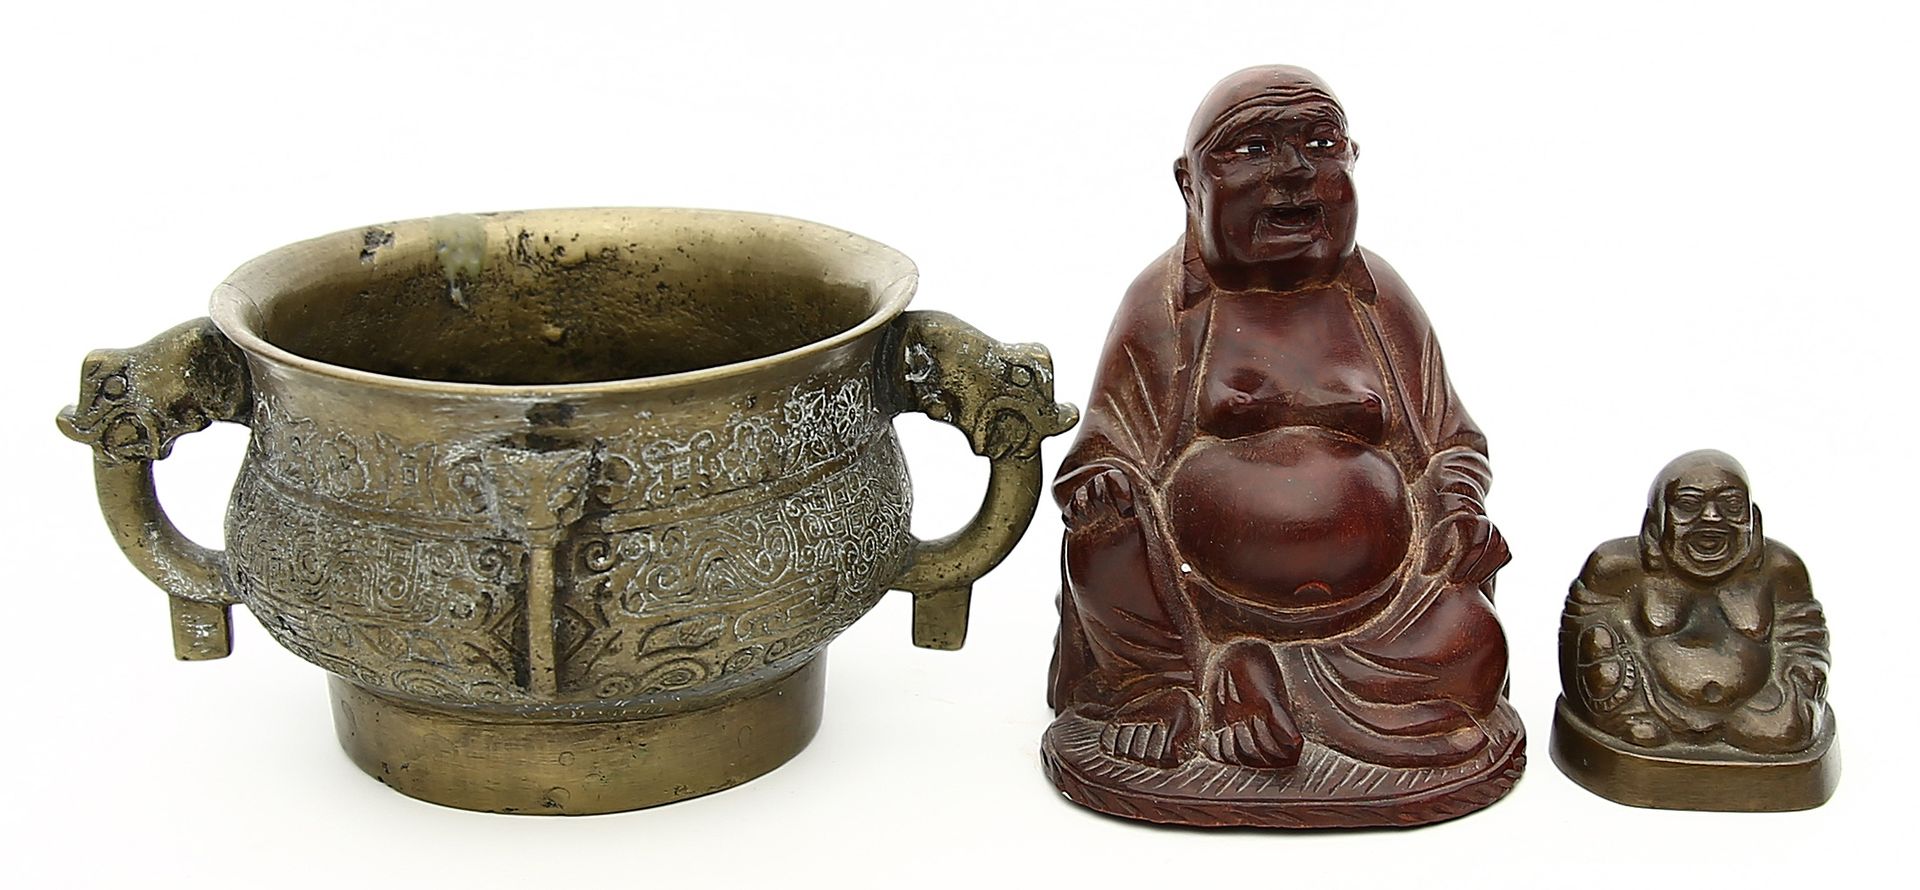 Weihrauchbrenner - Koro, großer und kleiner Buddha.